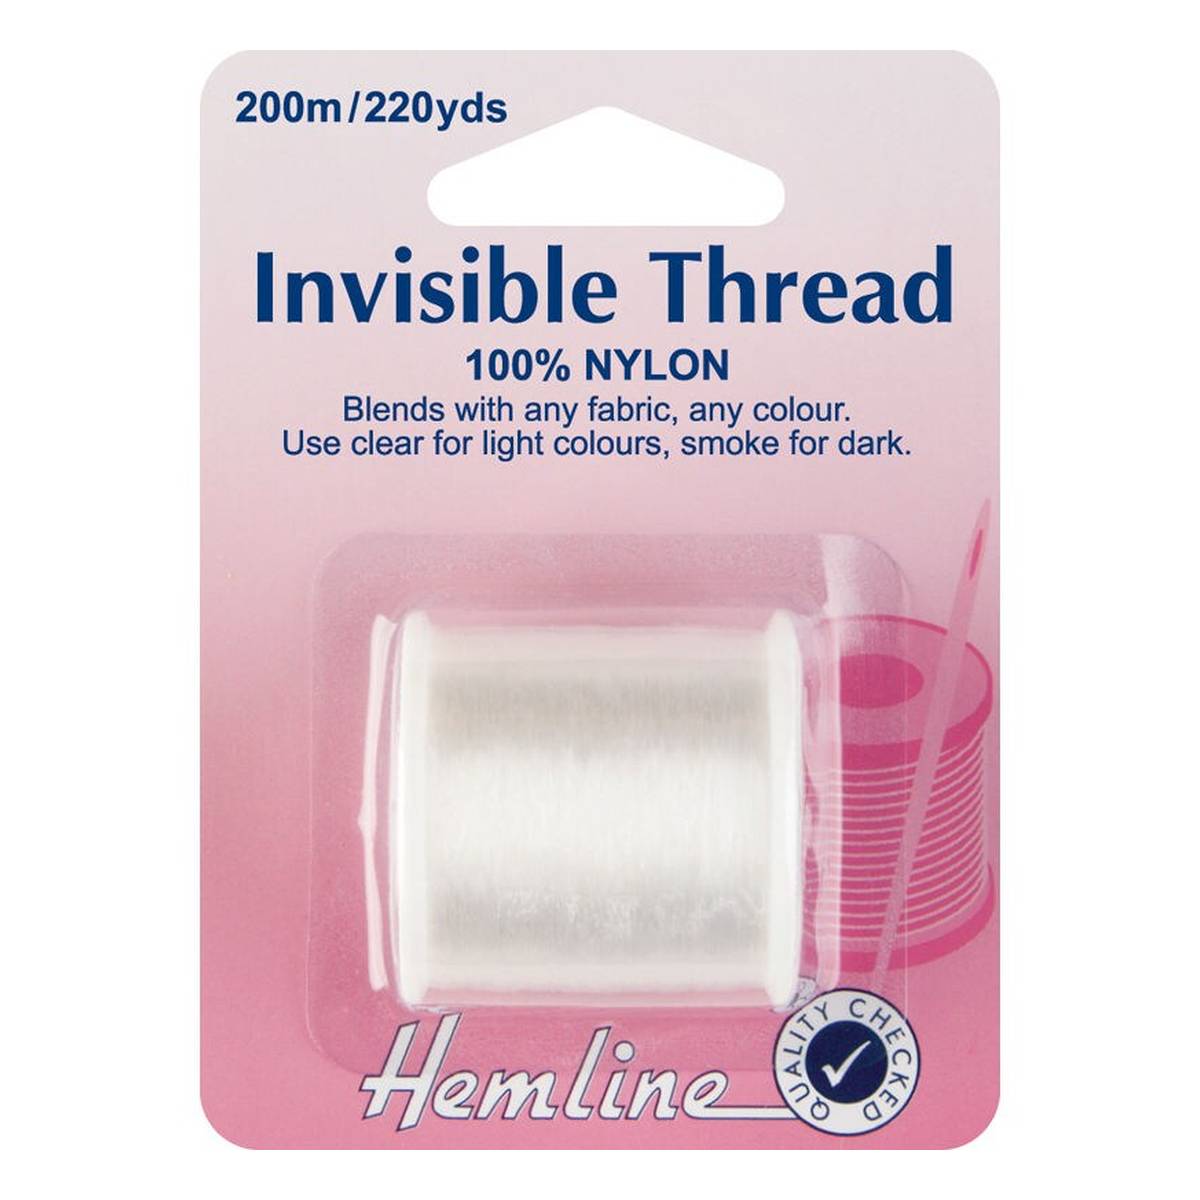 Buy Hemline Clear Nylon Invisible Thread 200m for GBP 3.30 | Hobbycraft UK